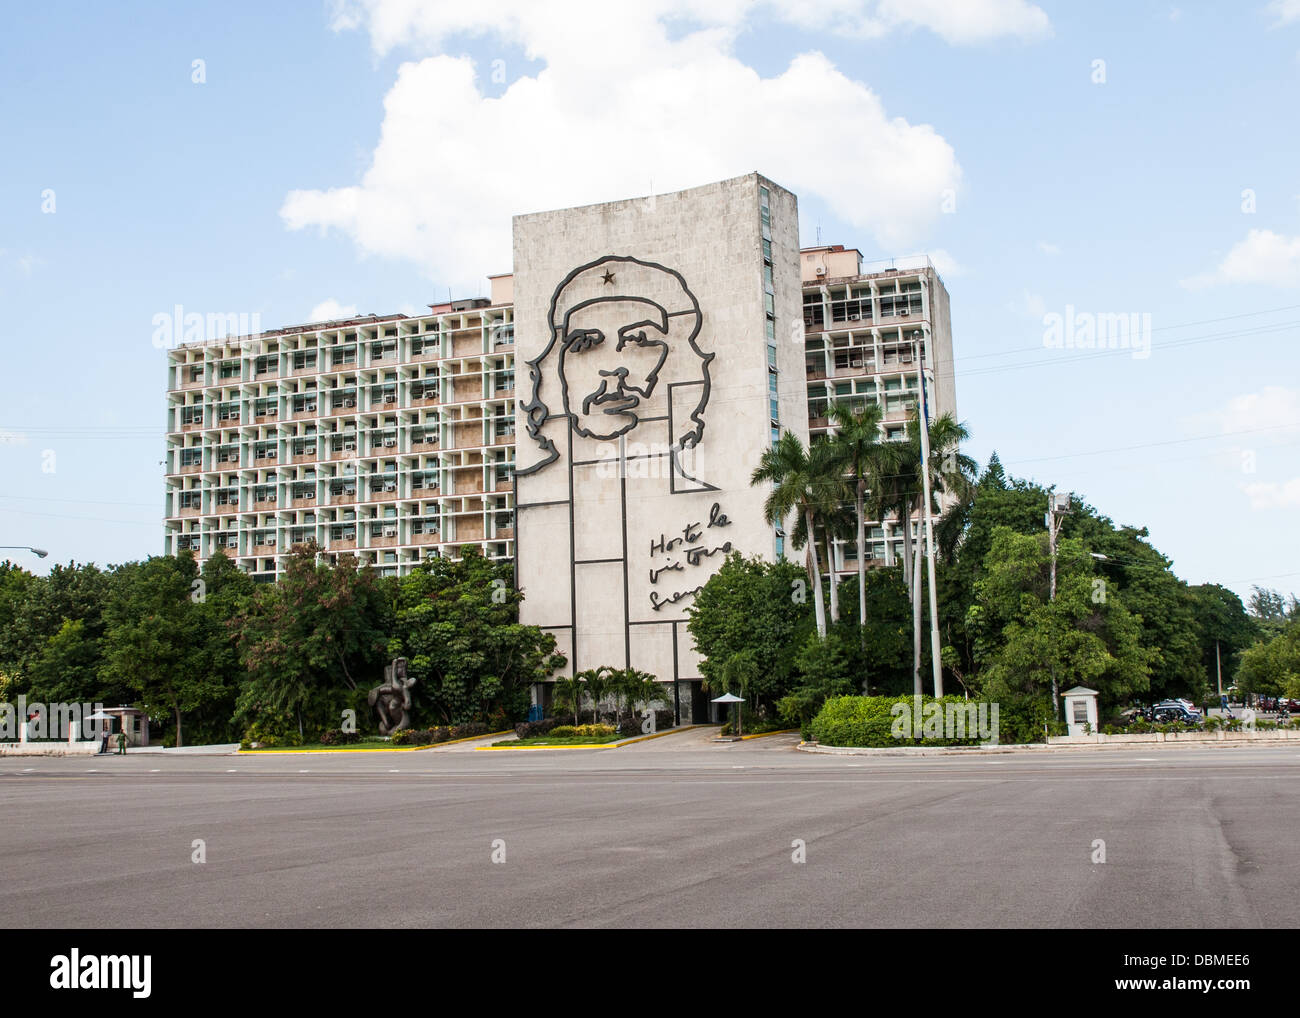 Revolution square in Cuba Havana Stock Photo